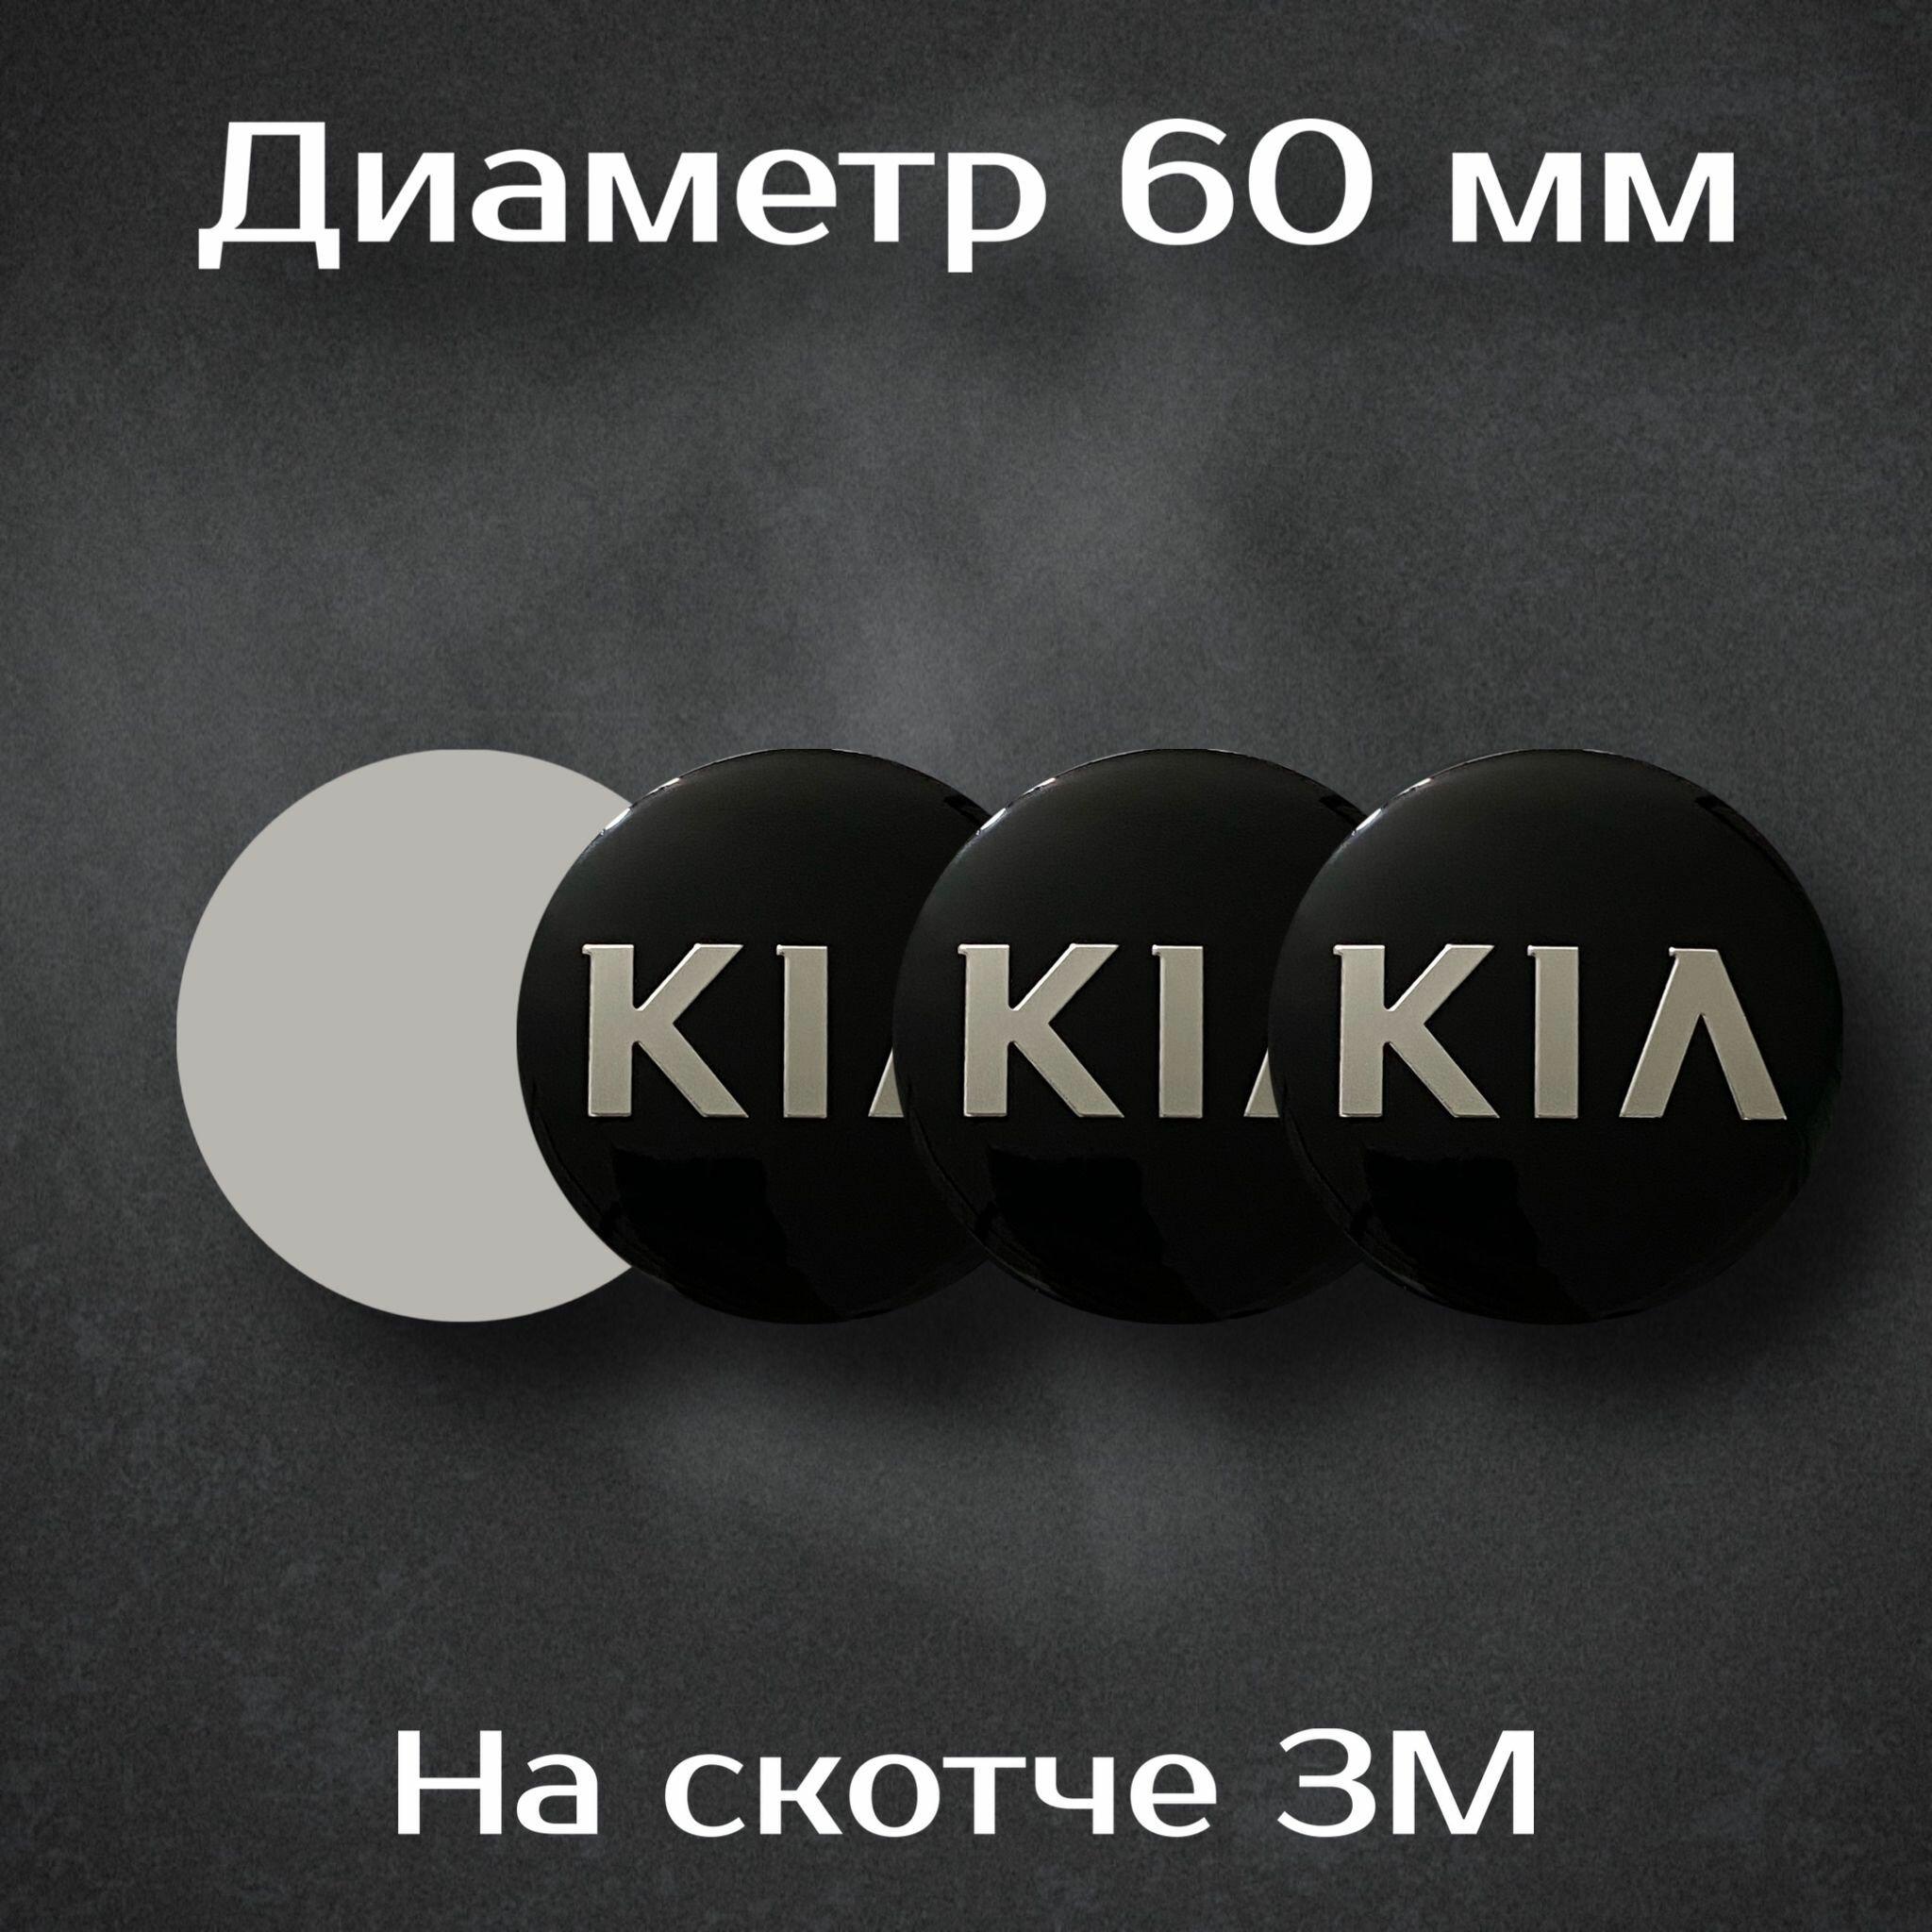 Наклейки на колесные диски с логотипом Kia / Киа . Диаметр 60 мм. Комплект из 4 наклеек.